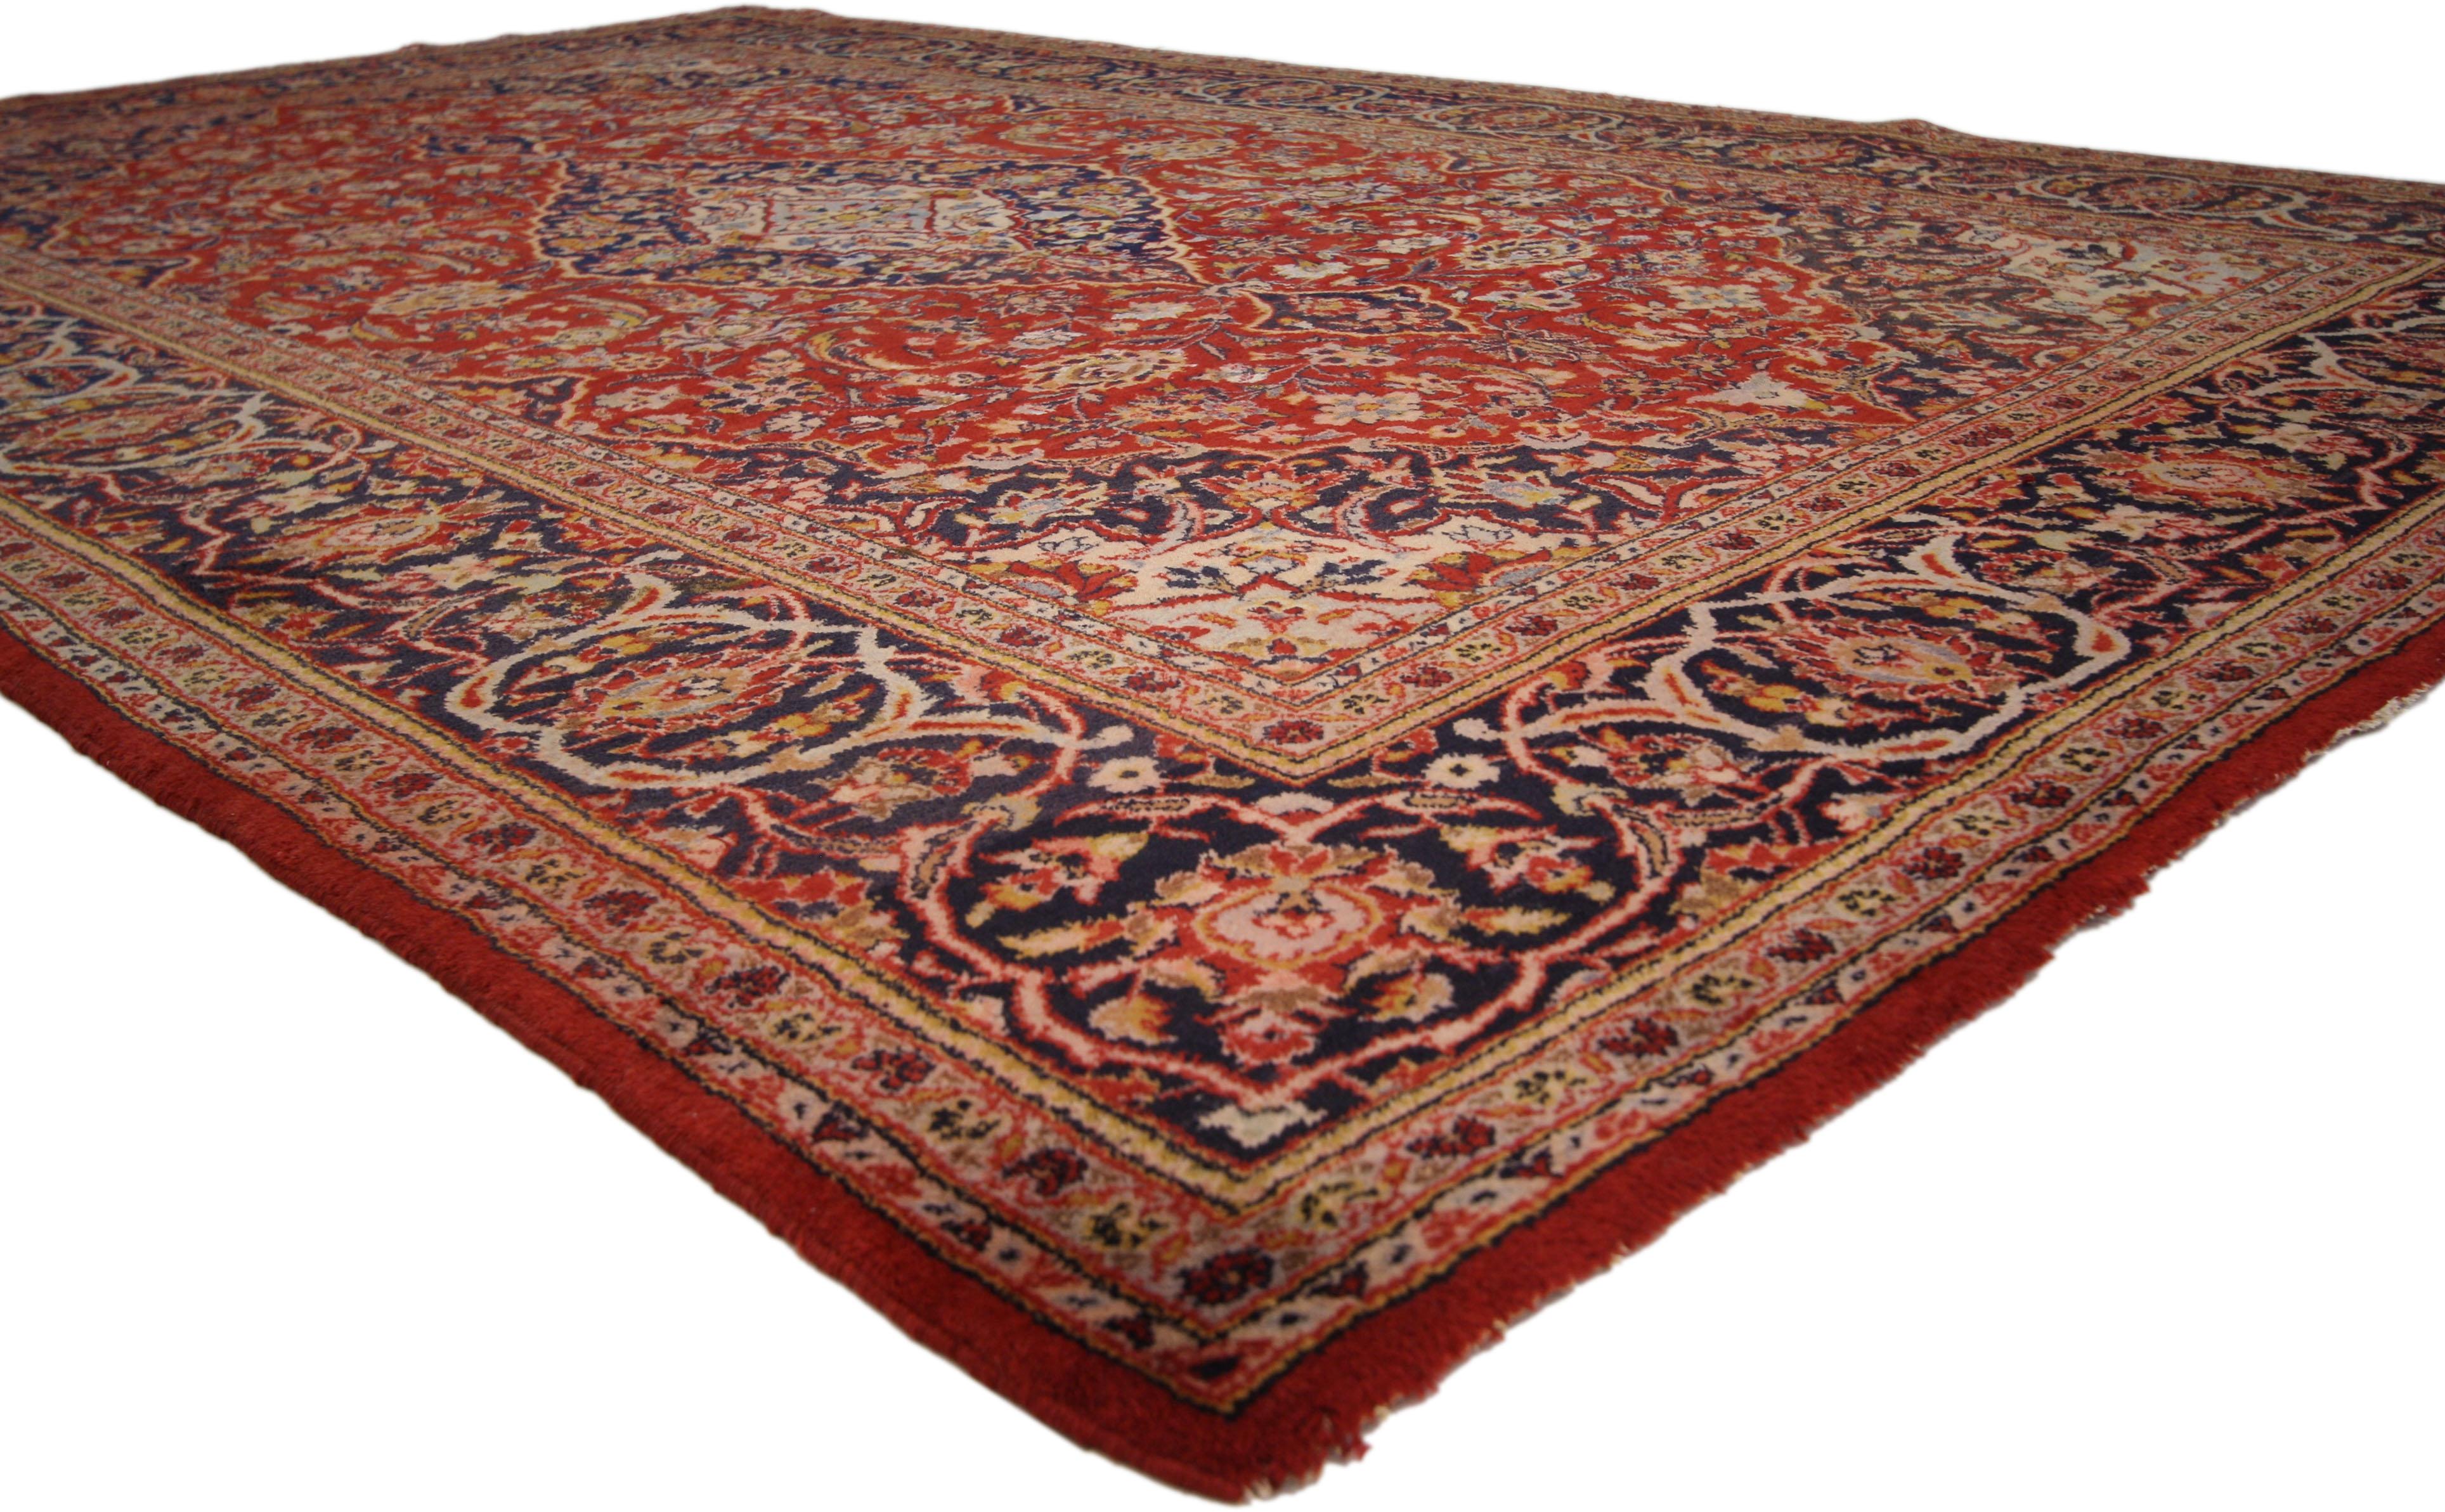 71934 Tapis persan vintage Kashan avec style colonial et fédéral traditionnel 06'10 x 10'09. Ce tapis Persan Kashan vintage en laine noué à la main présente un médaillon central cuspidé en forme d'amande ancré par des pendentifs en forme de trèfle